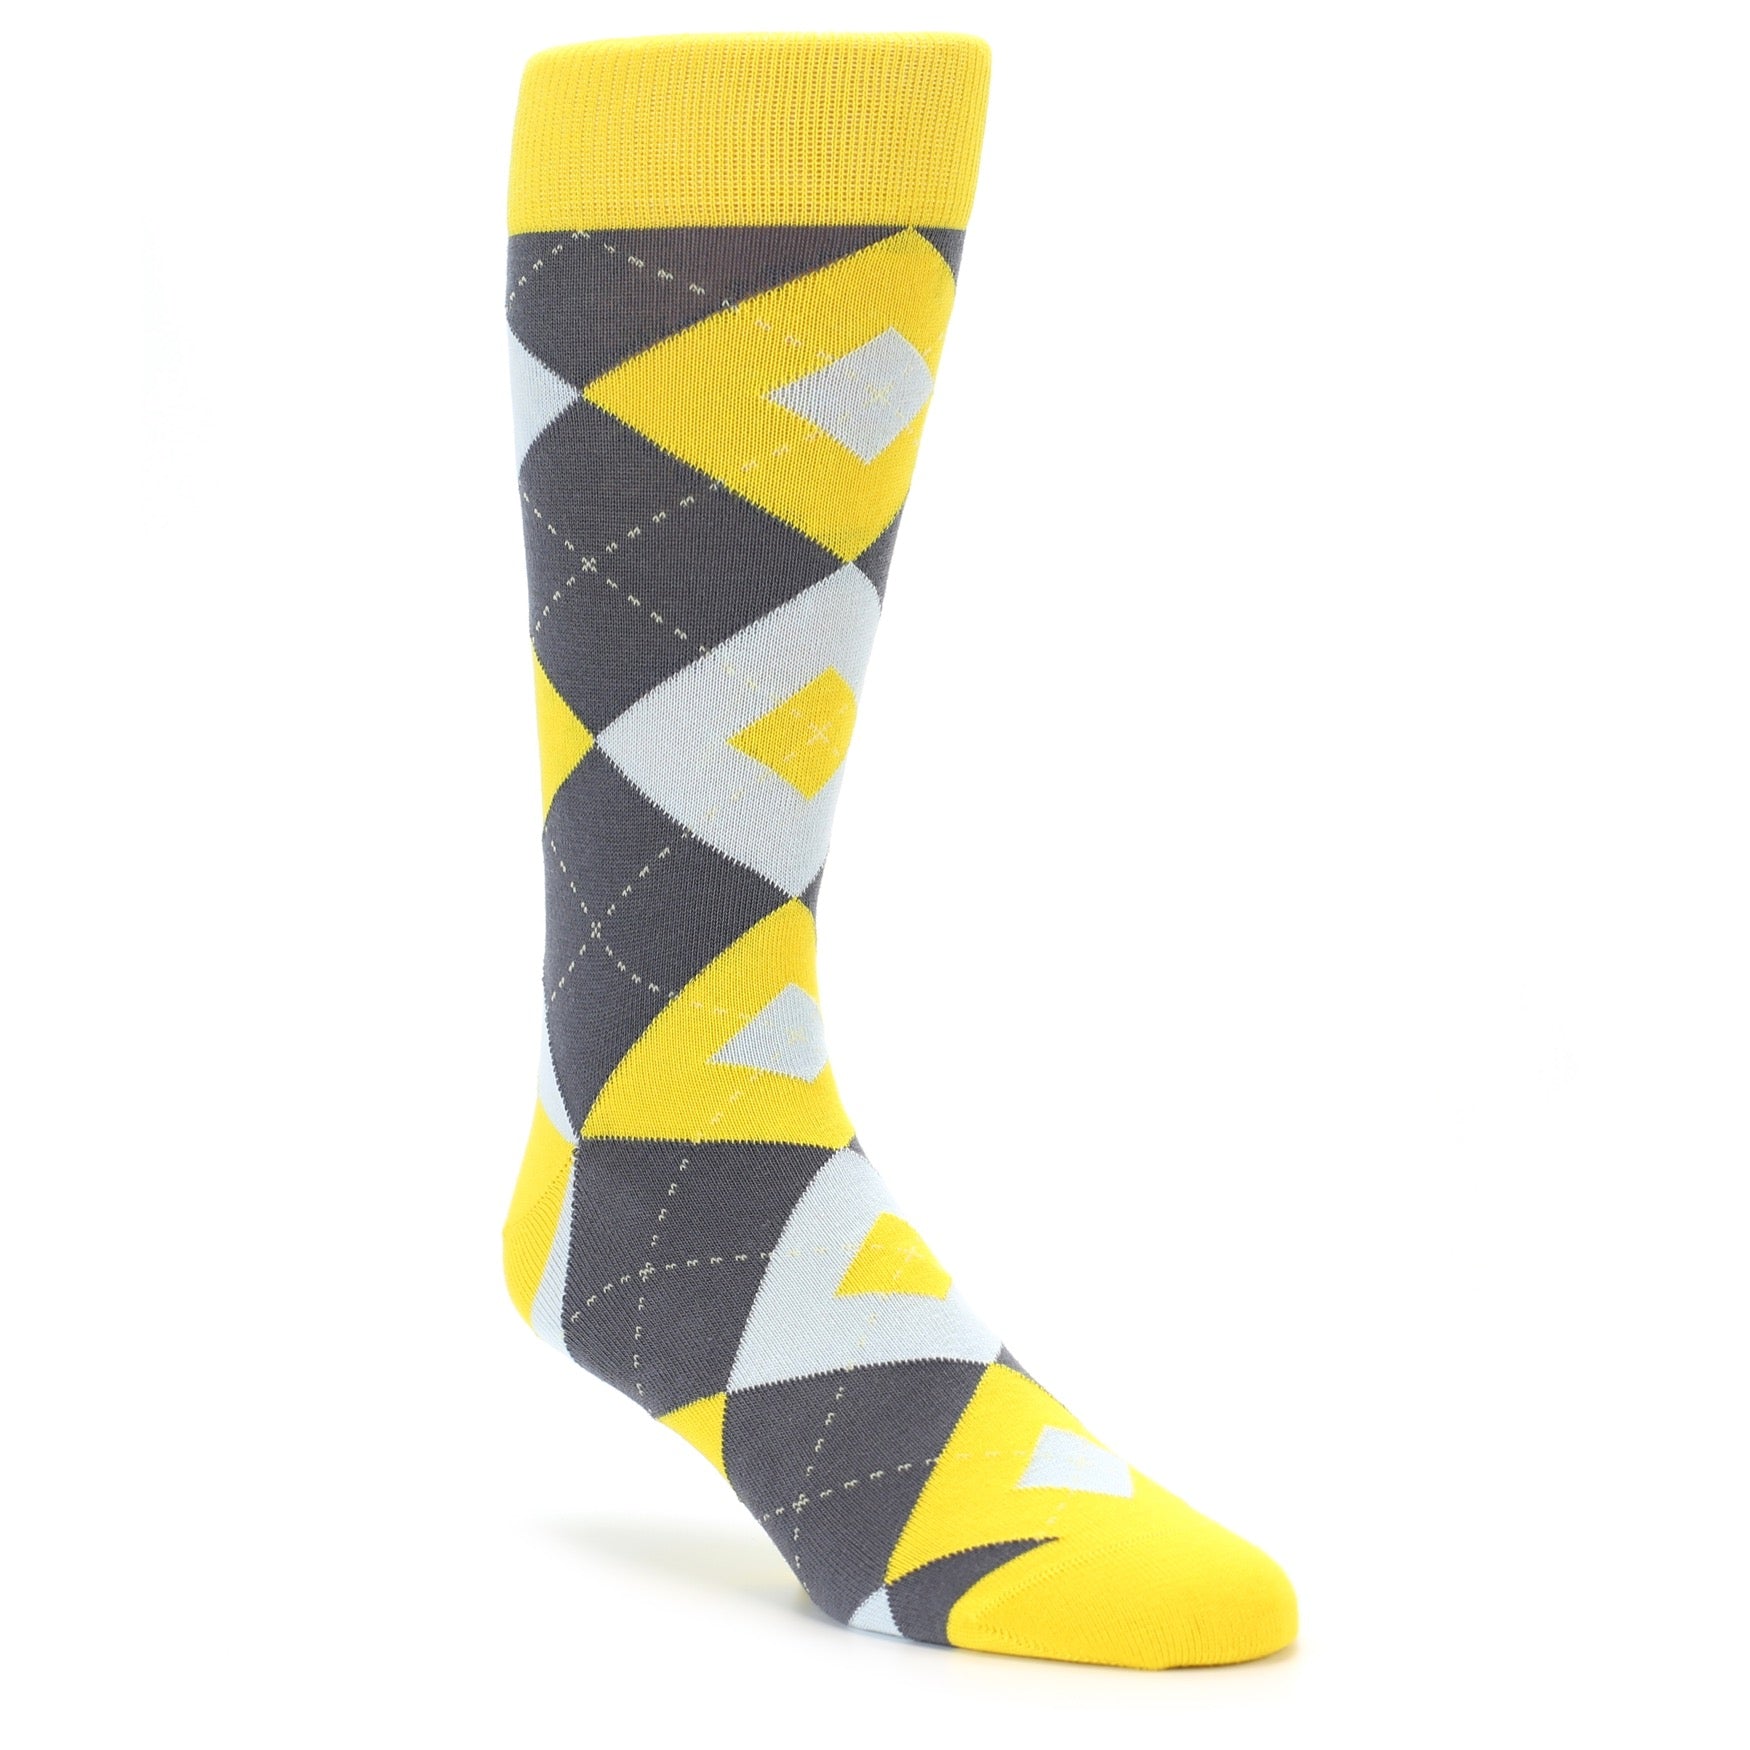 Golden Yellow Argyle Groomsmen Socks